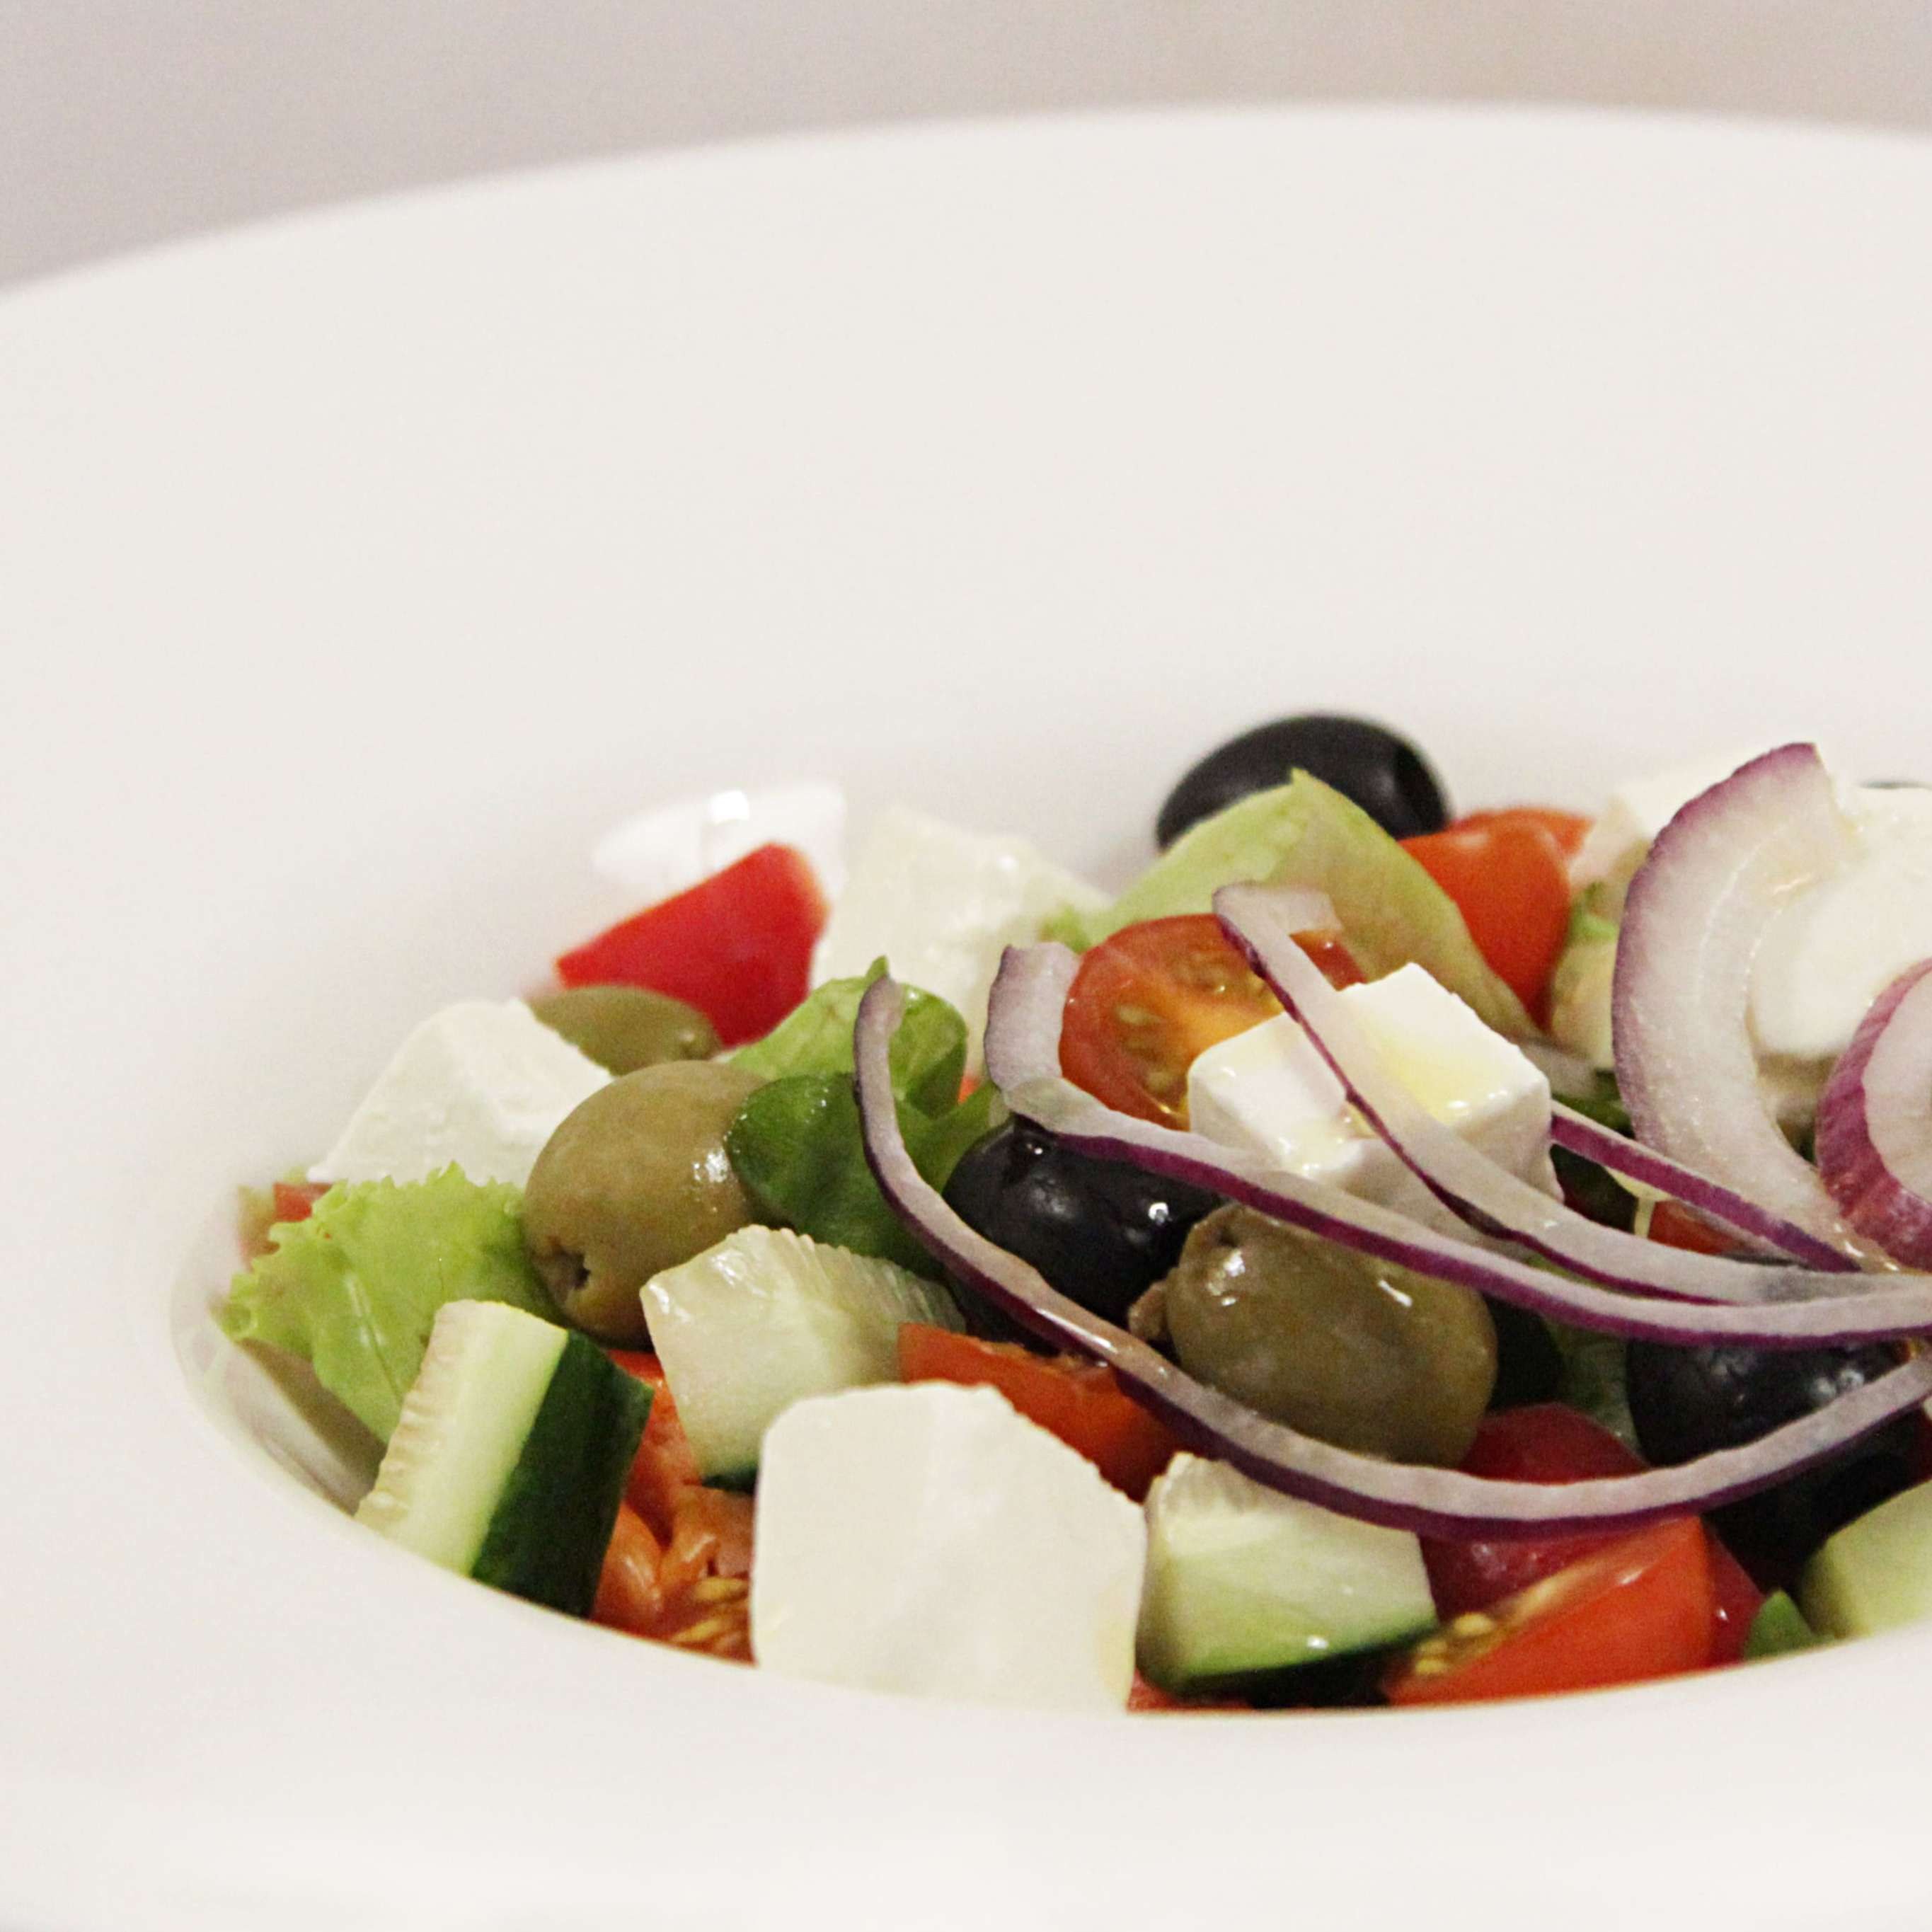 Заправка для салата греческий. Овощной салат с сыром Фета и маслинами. Греческий салат на тарелке сбоку. Сыр Фета и маслины. Салат греческий с муссом из сыра.